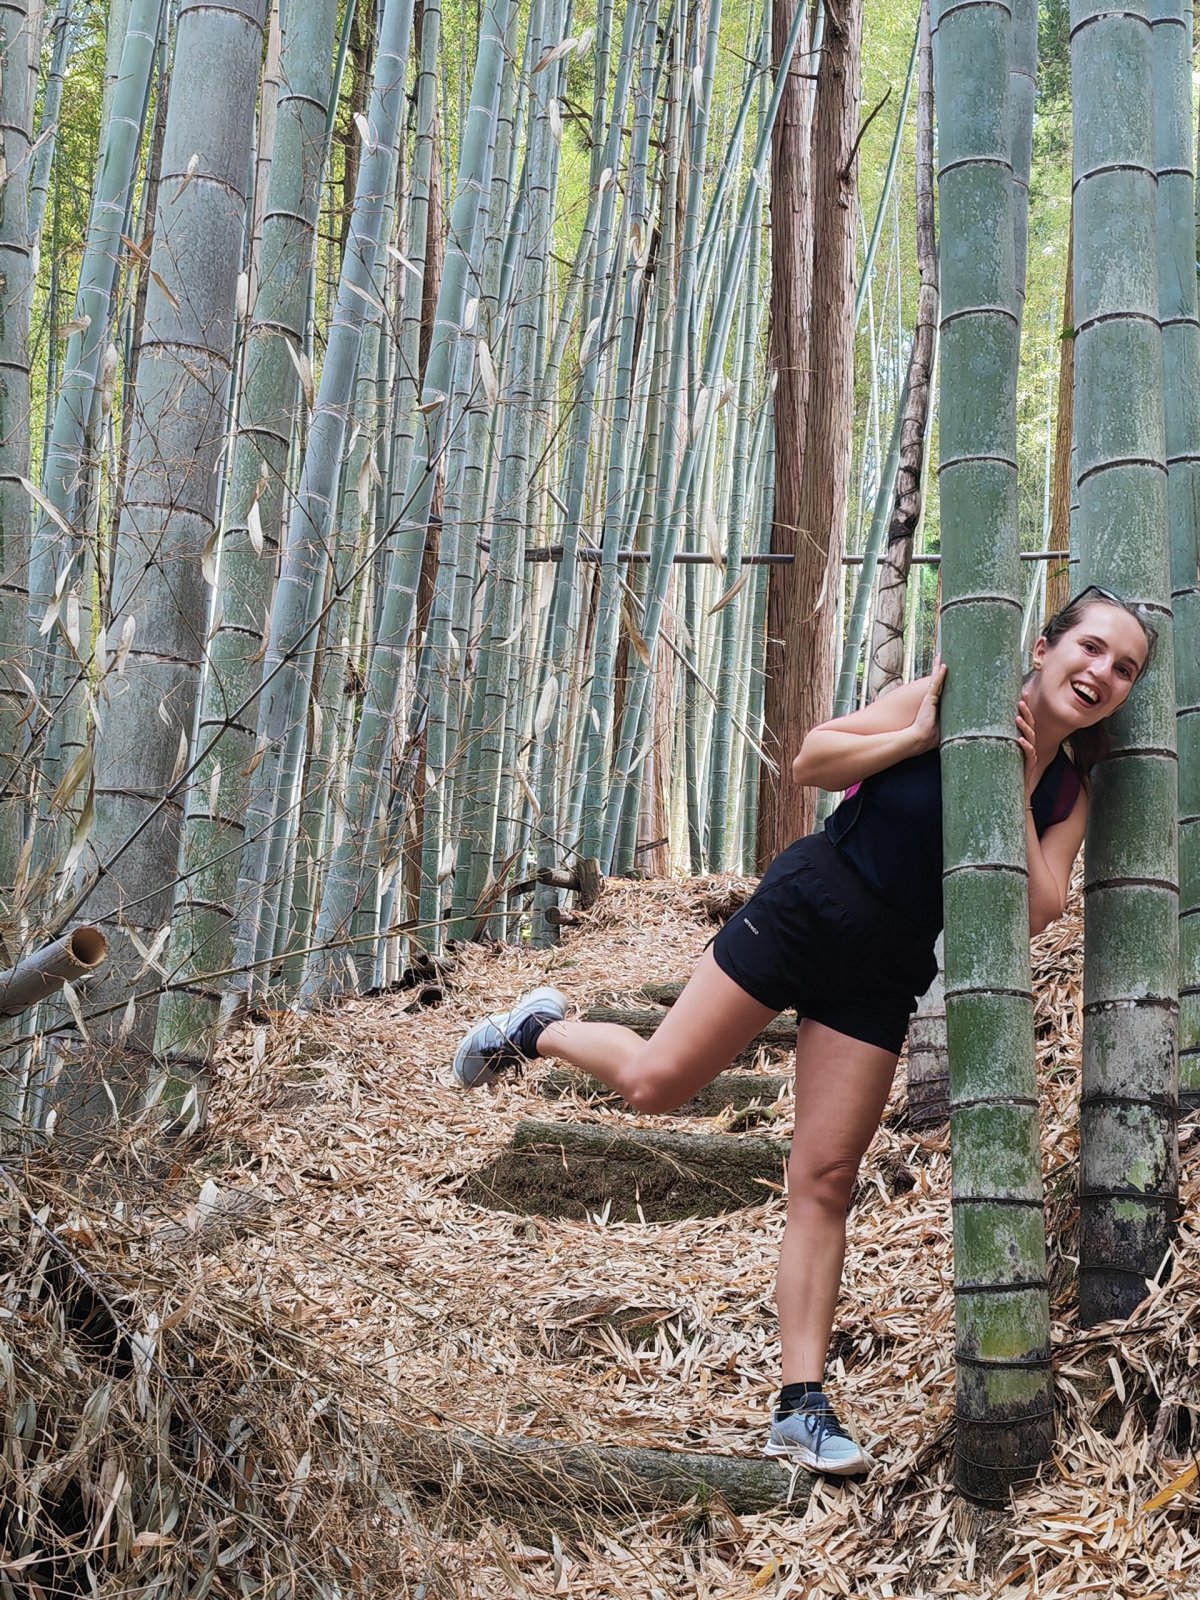 Náhodně objevený bambusový ráj!